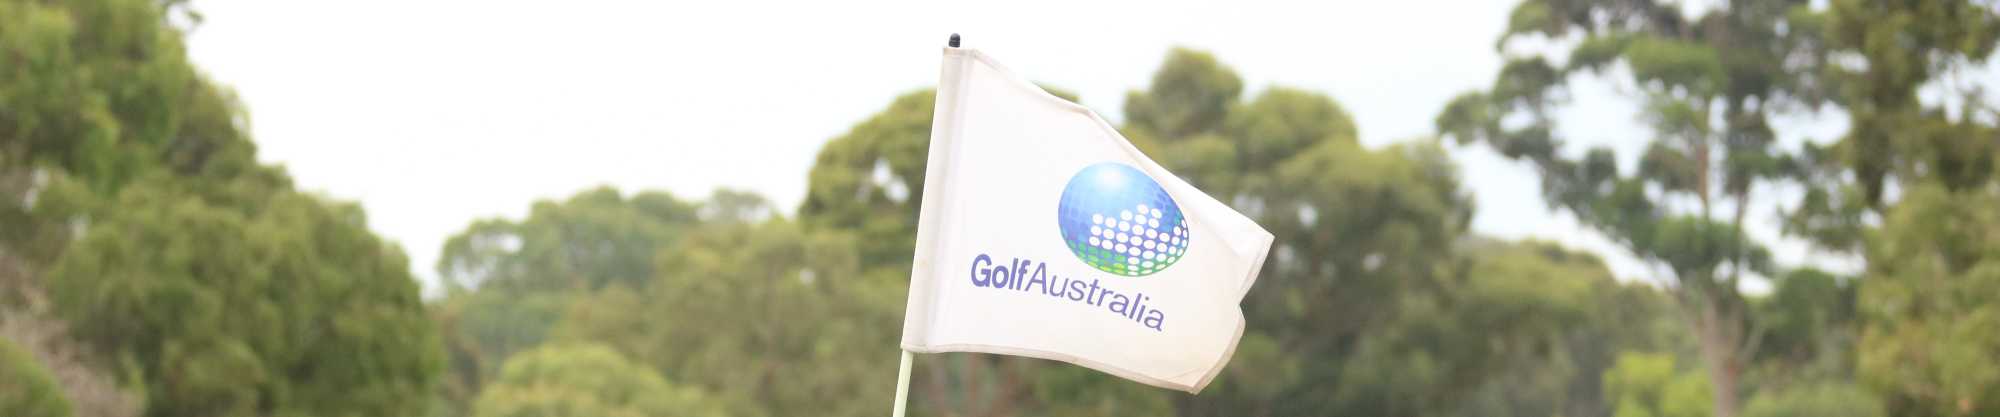 Golf Australia flag_banner